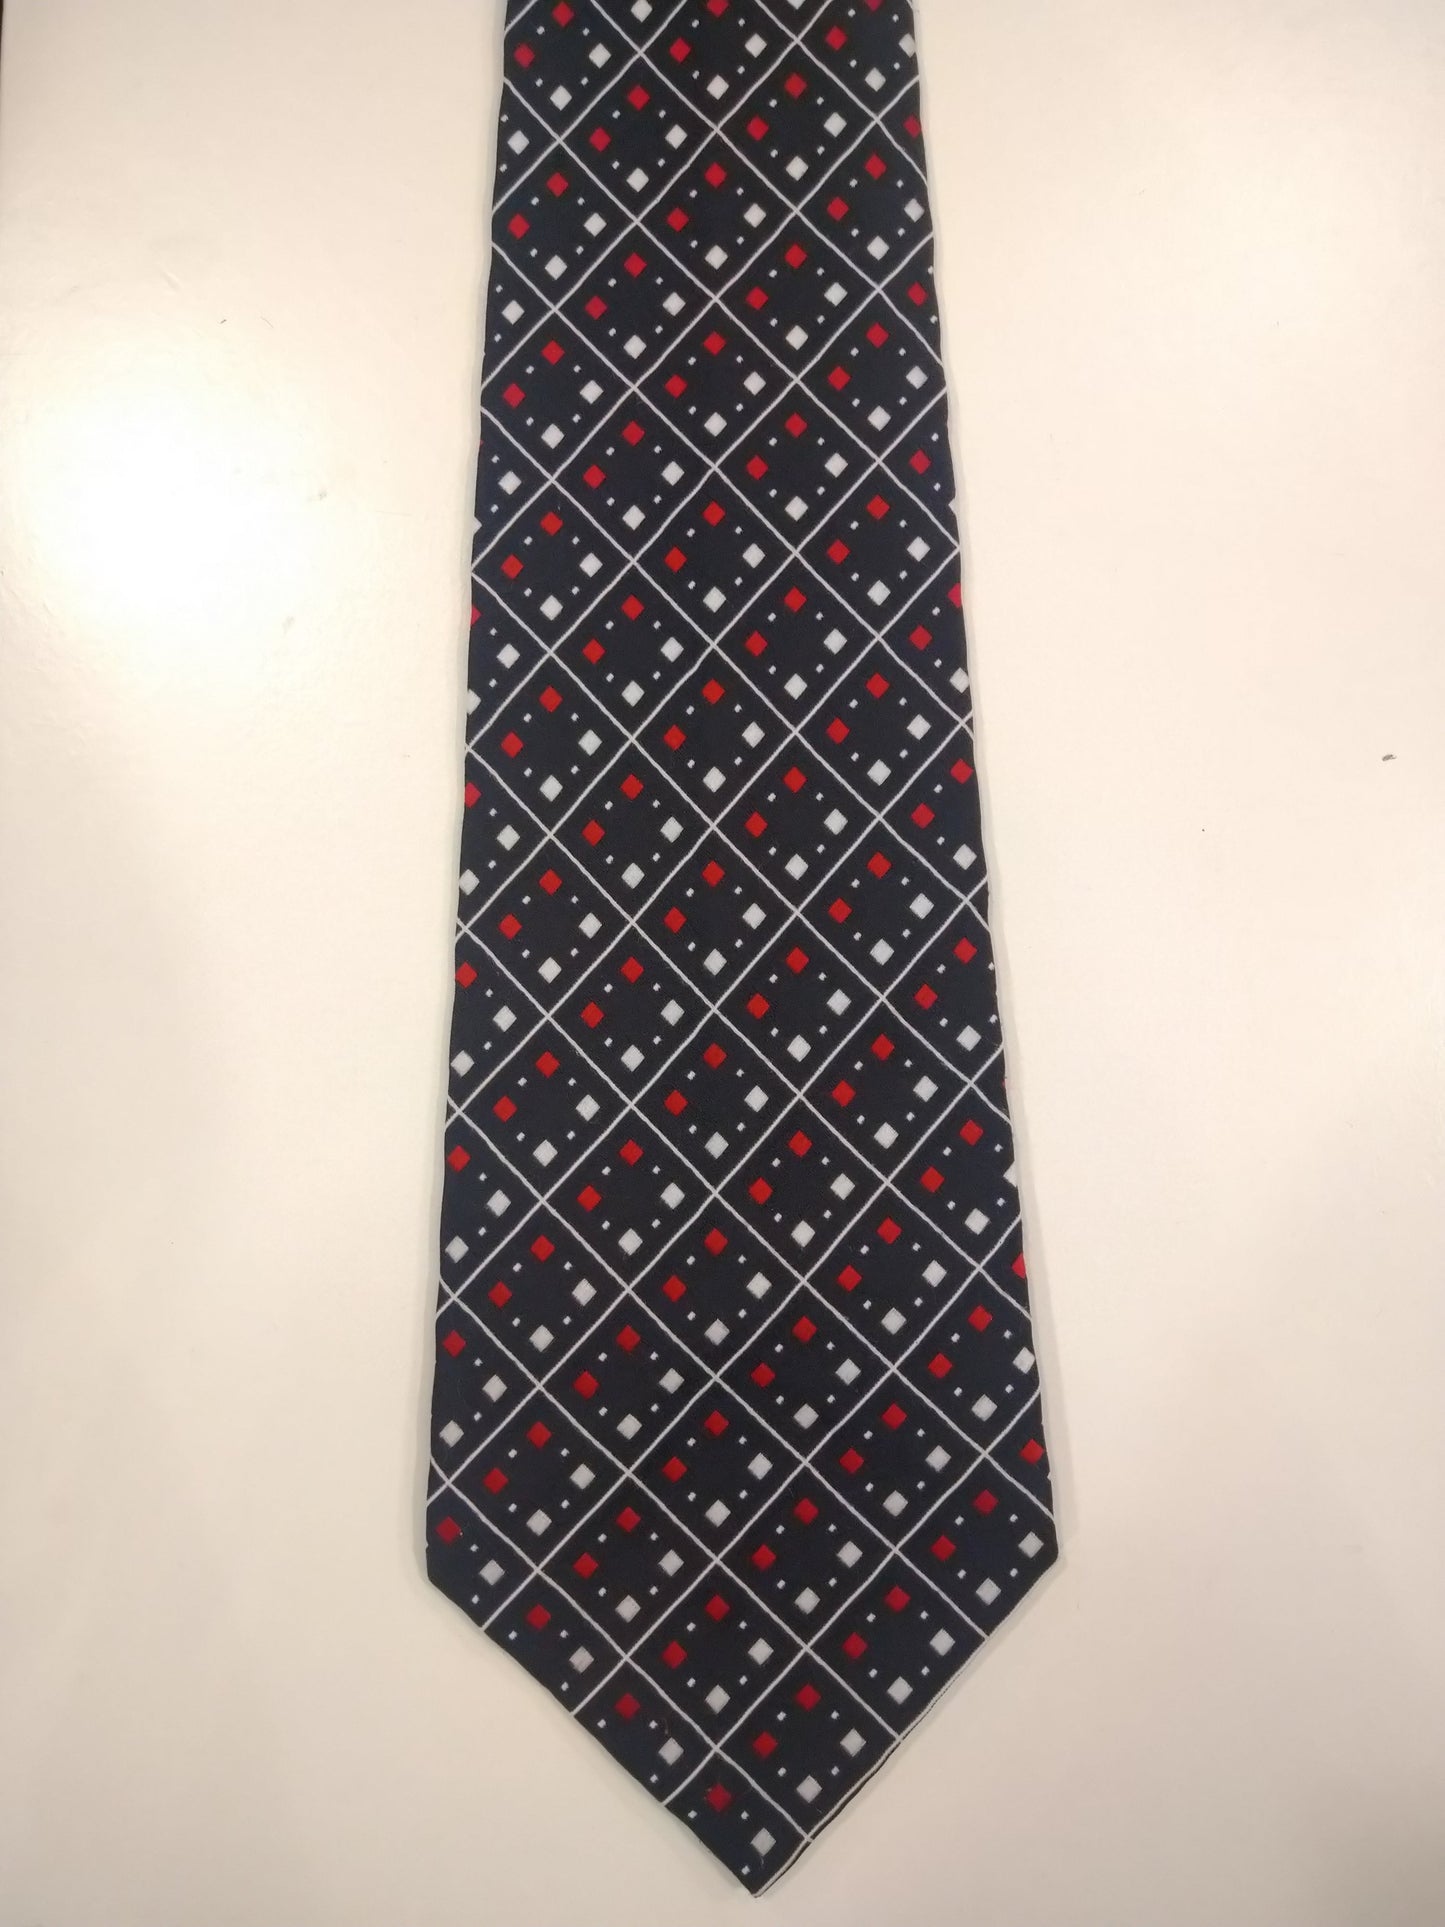 Altio Amsterdam super vintage extra brede polyester stropdas. Zwart rood wit bolletjes motief.